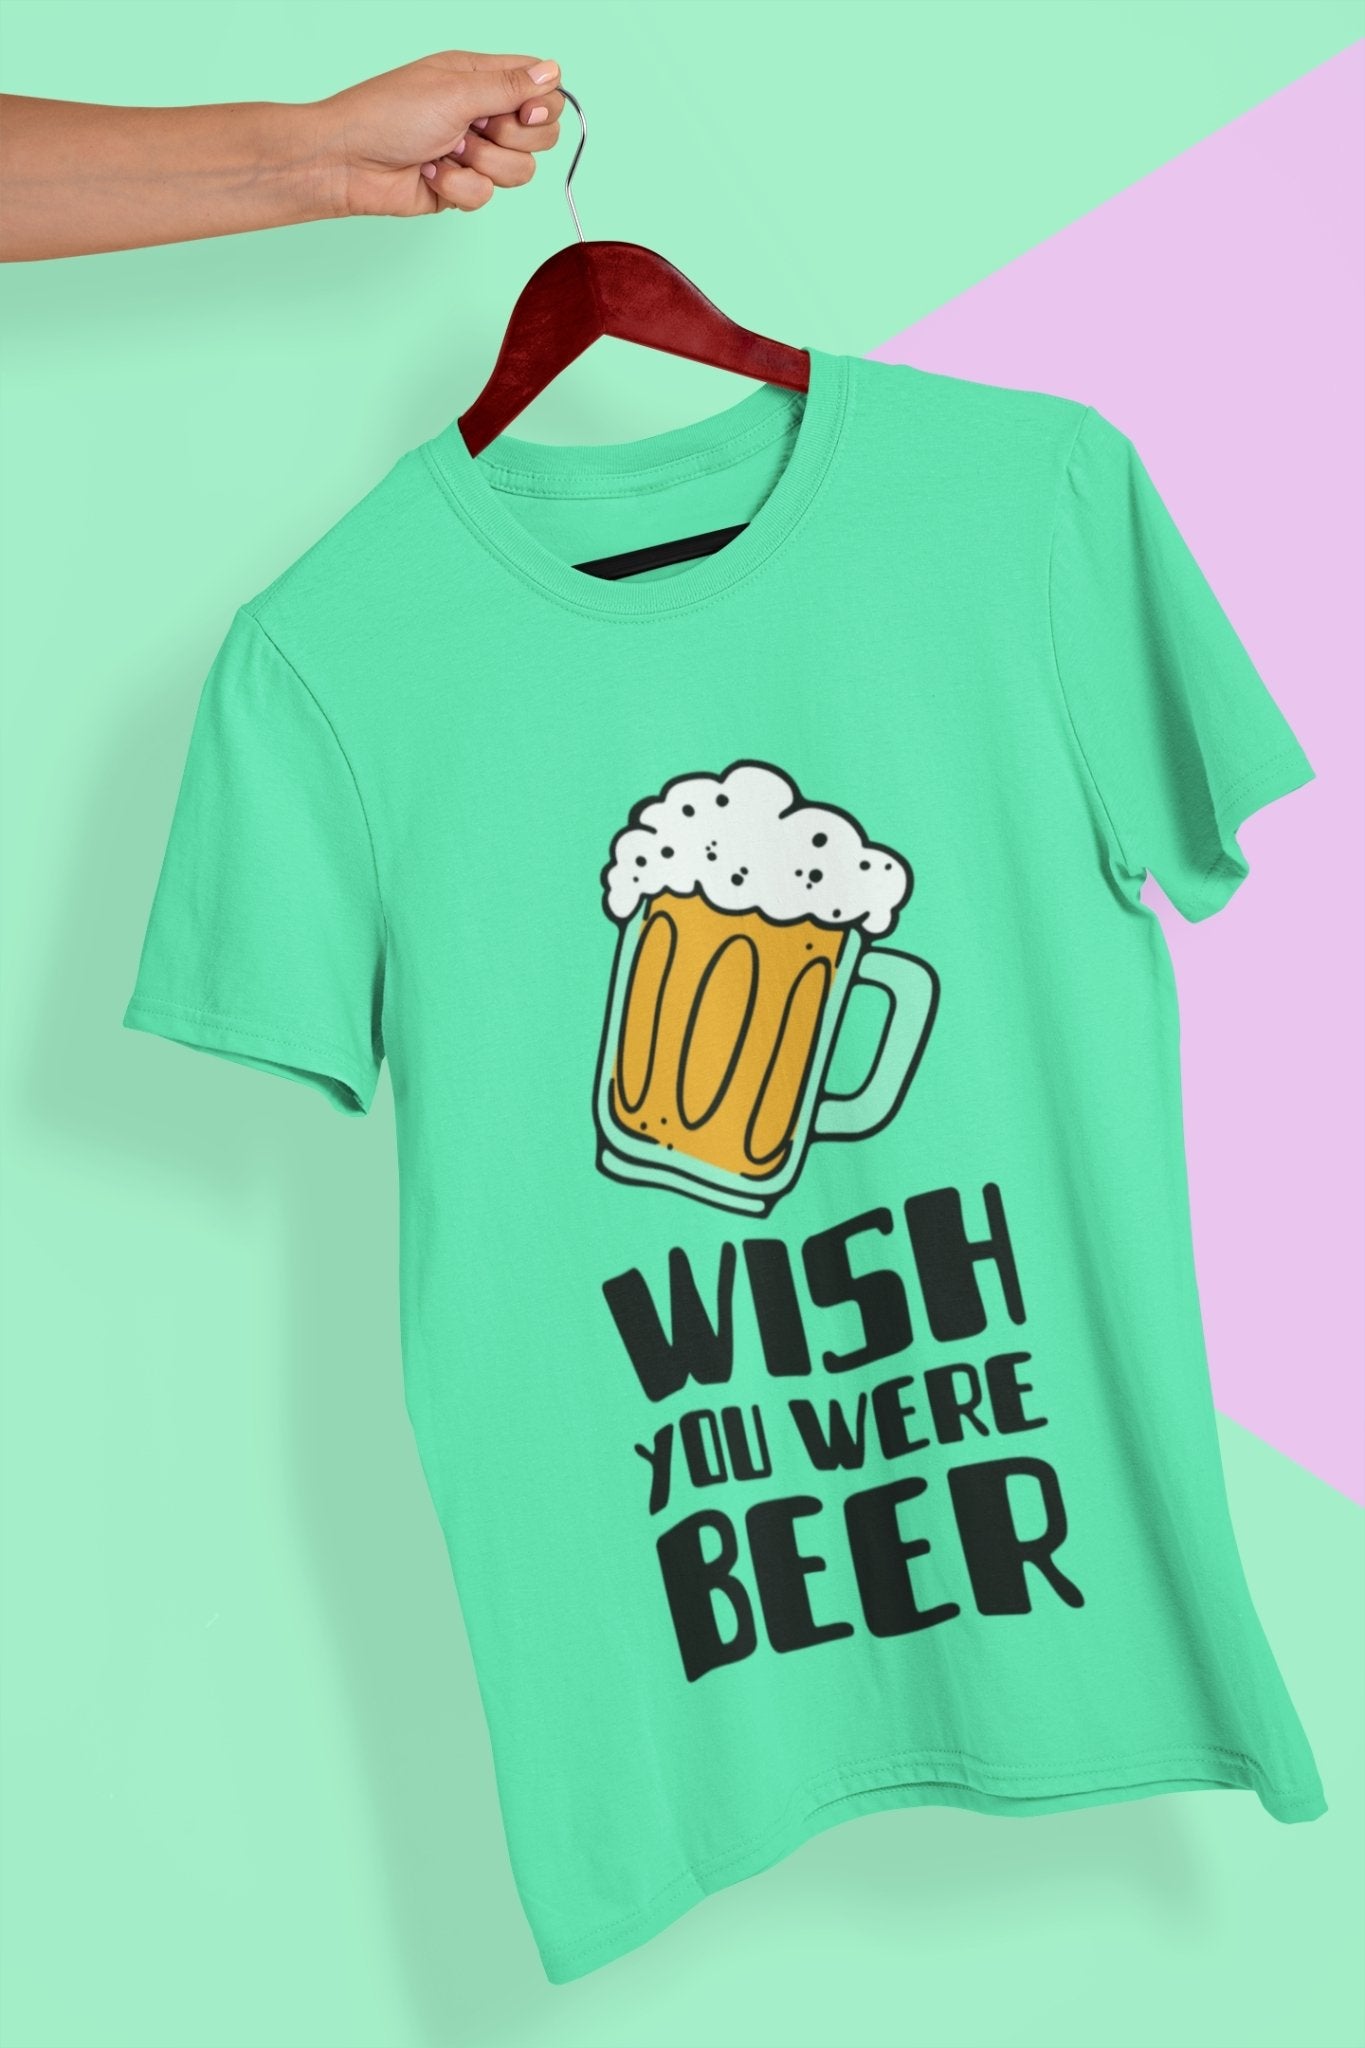 Wish You Were Beer Mens Half Sleeves T-shirt- FunkyTeesClub - Funky Tees Club